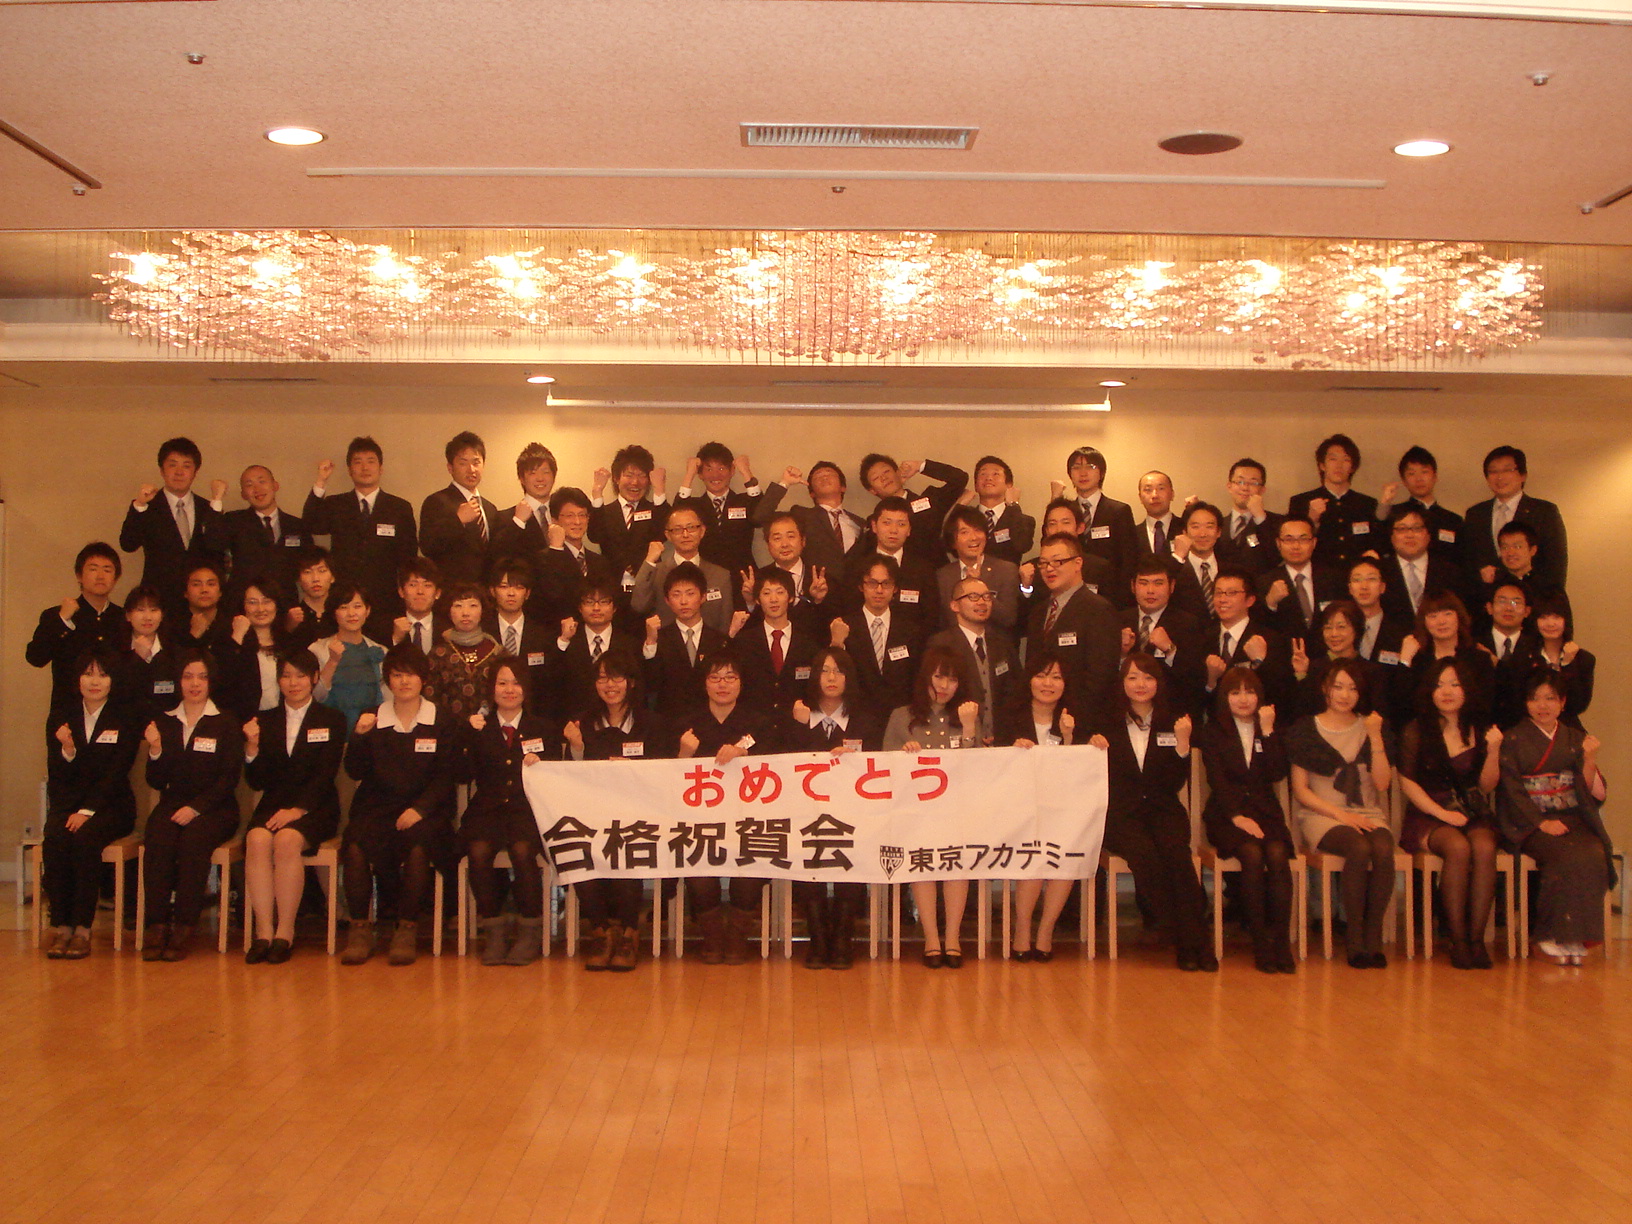 イベント 合格祝賀会 東京アカデミー青森校 公務員 教員 各種国家試験対策 のブログ